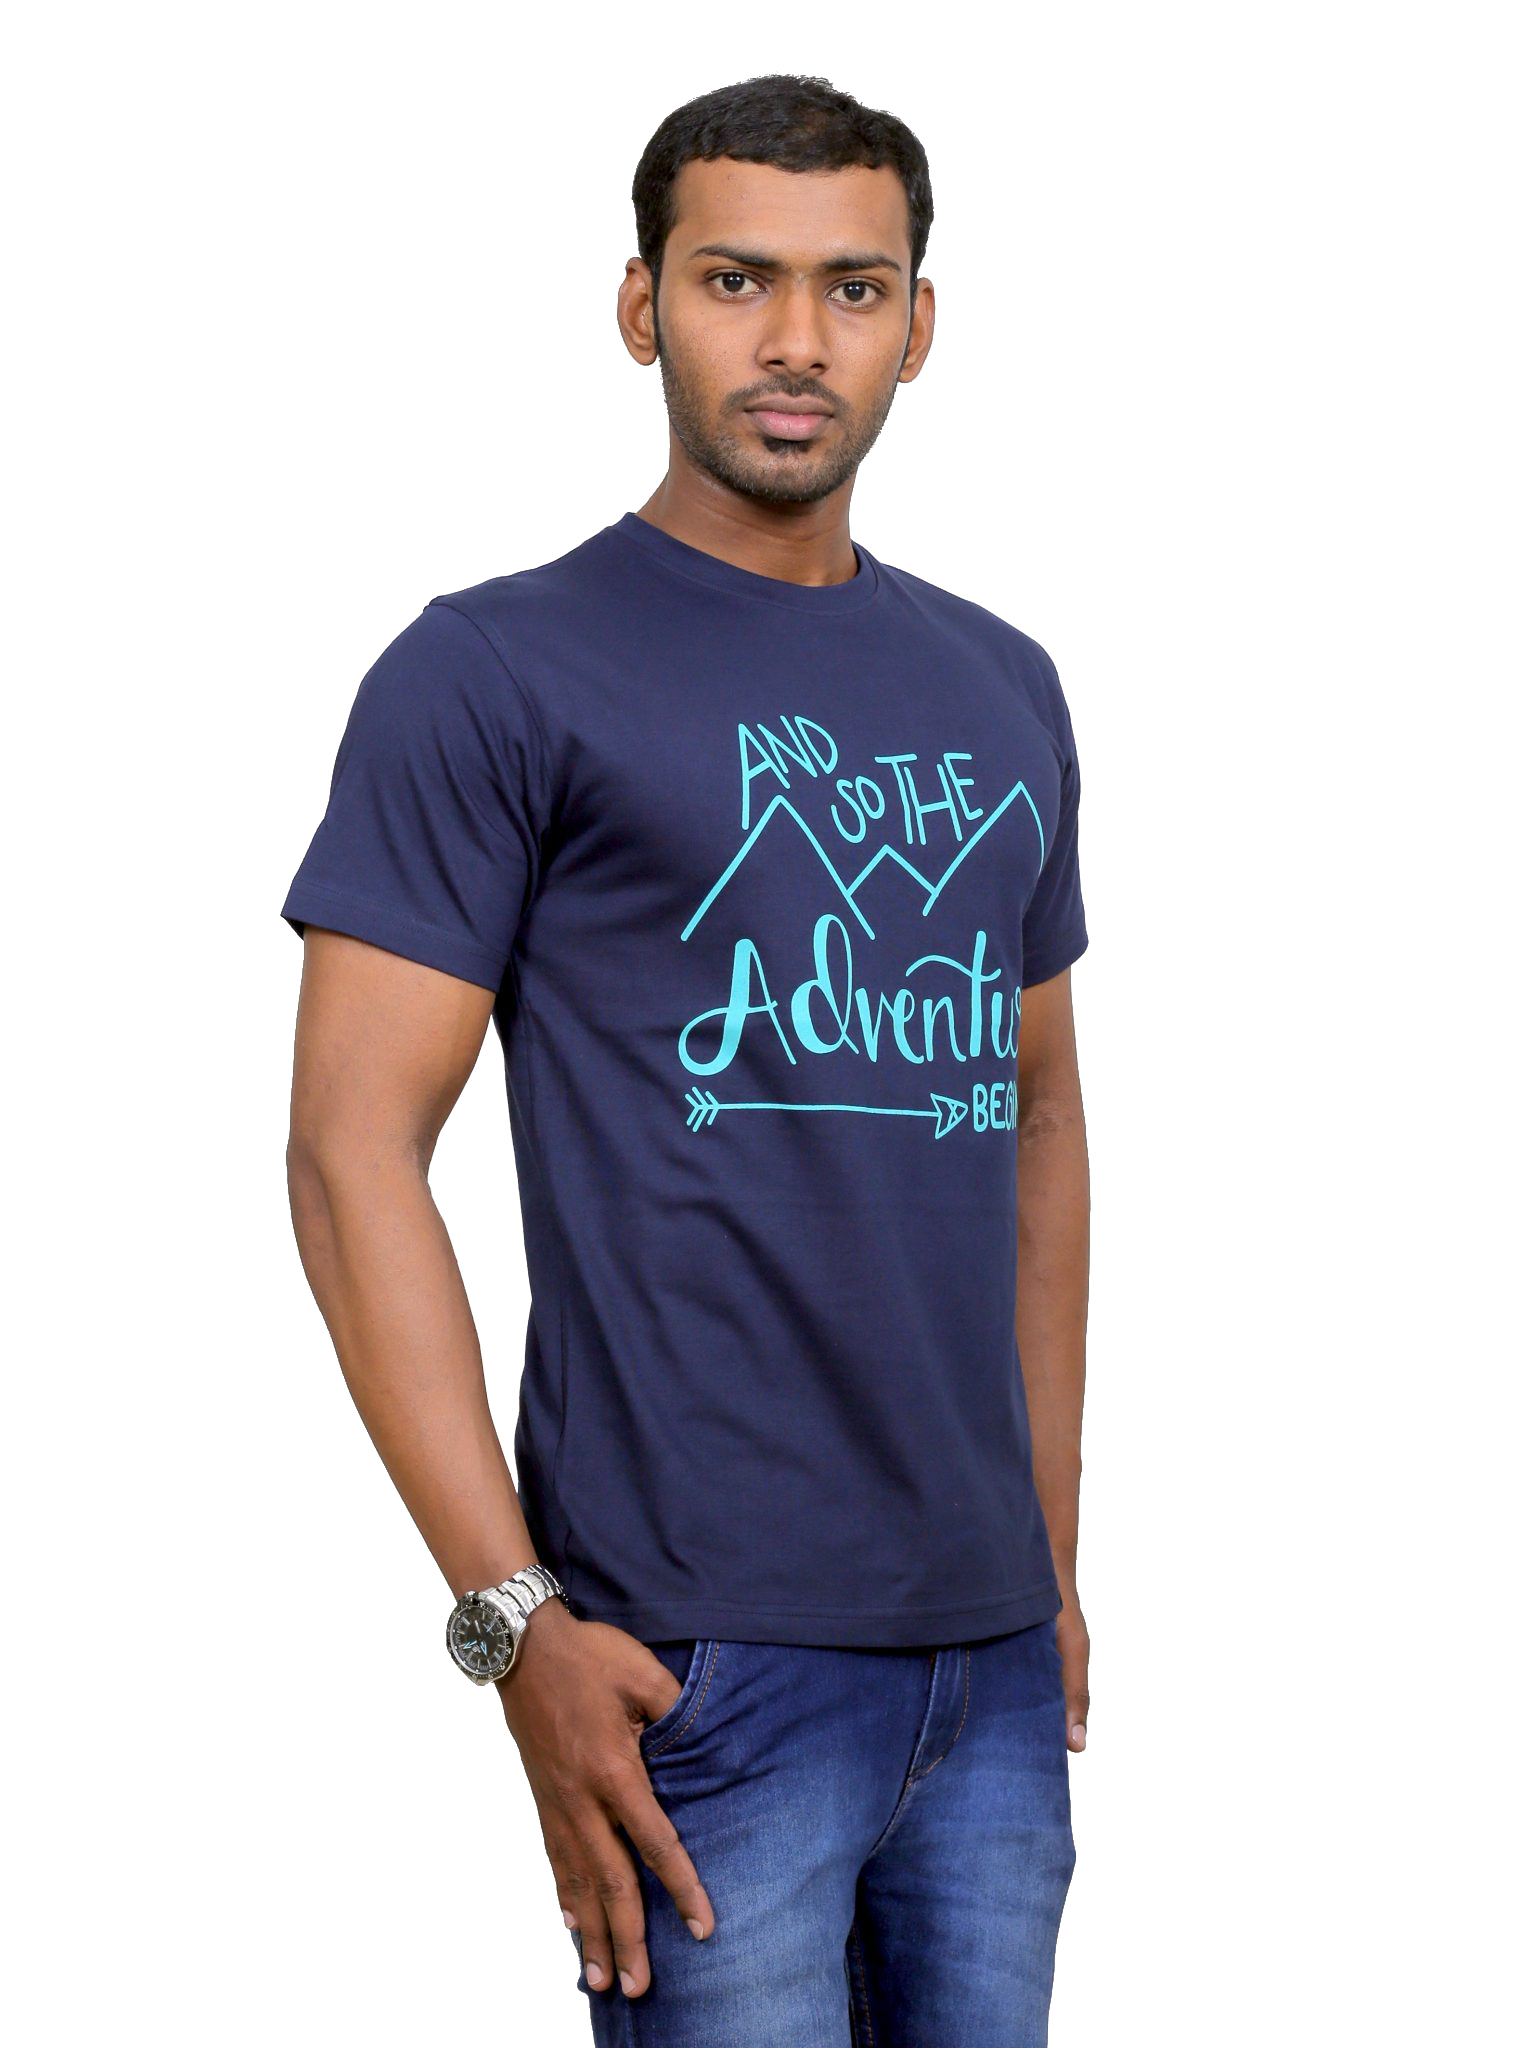 Indian Aurochs Men Adventurer Navy Blue Round Neck T-Shirt - Indian Aurochs